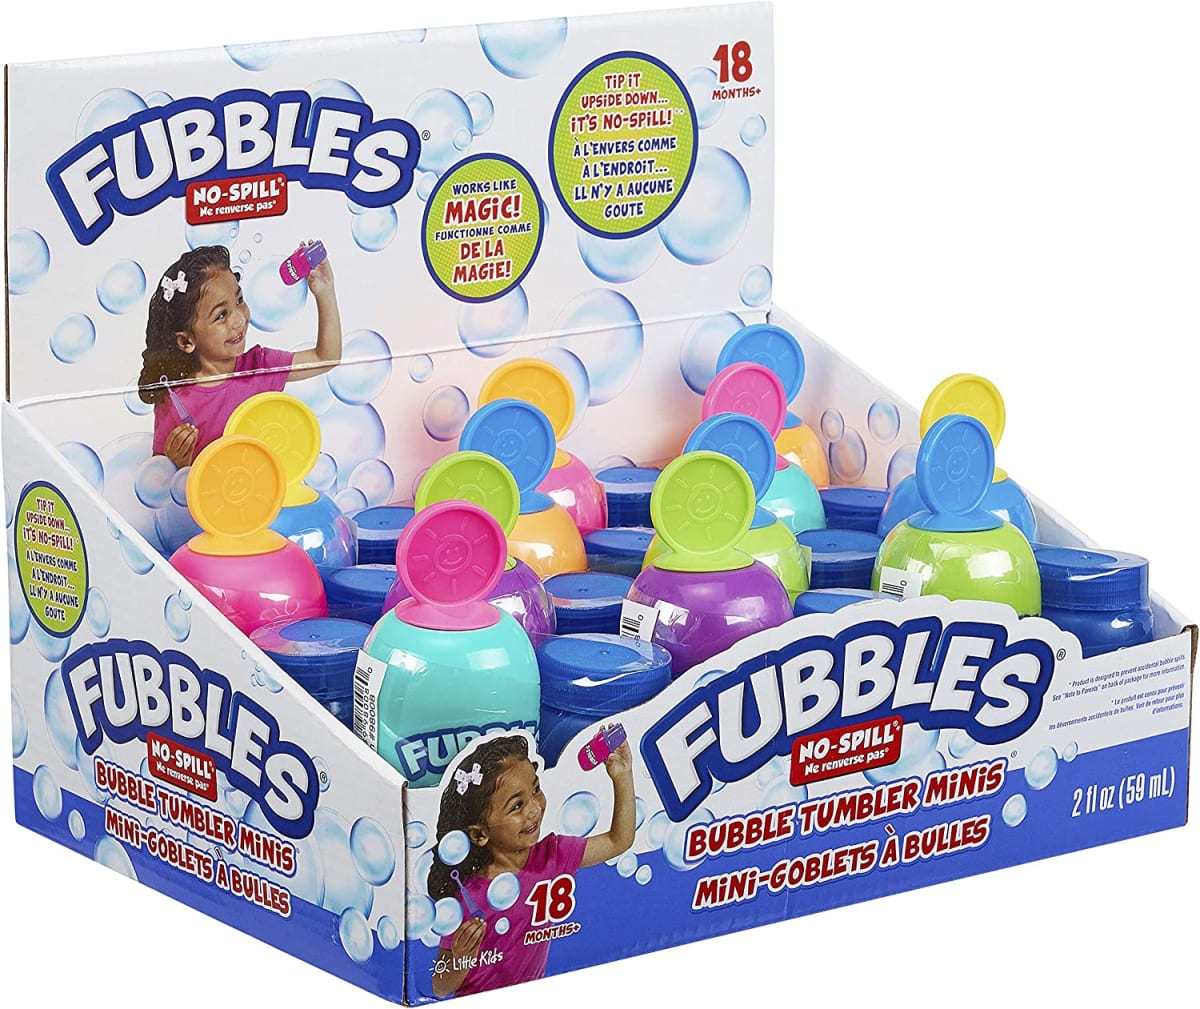 Fubbles Bubbles No Spill Bubble Tumbler Minis